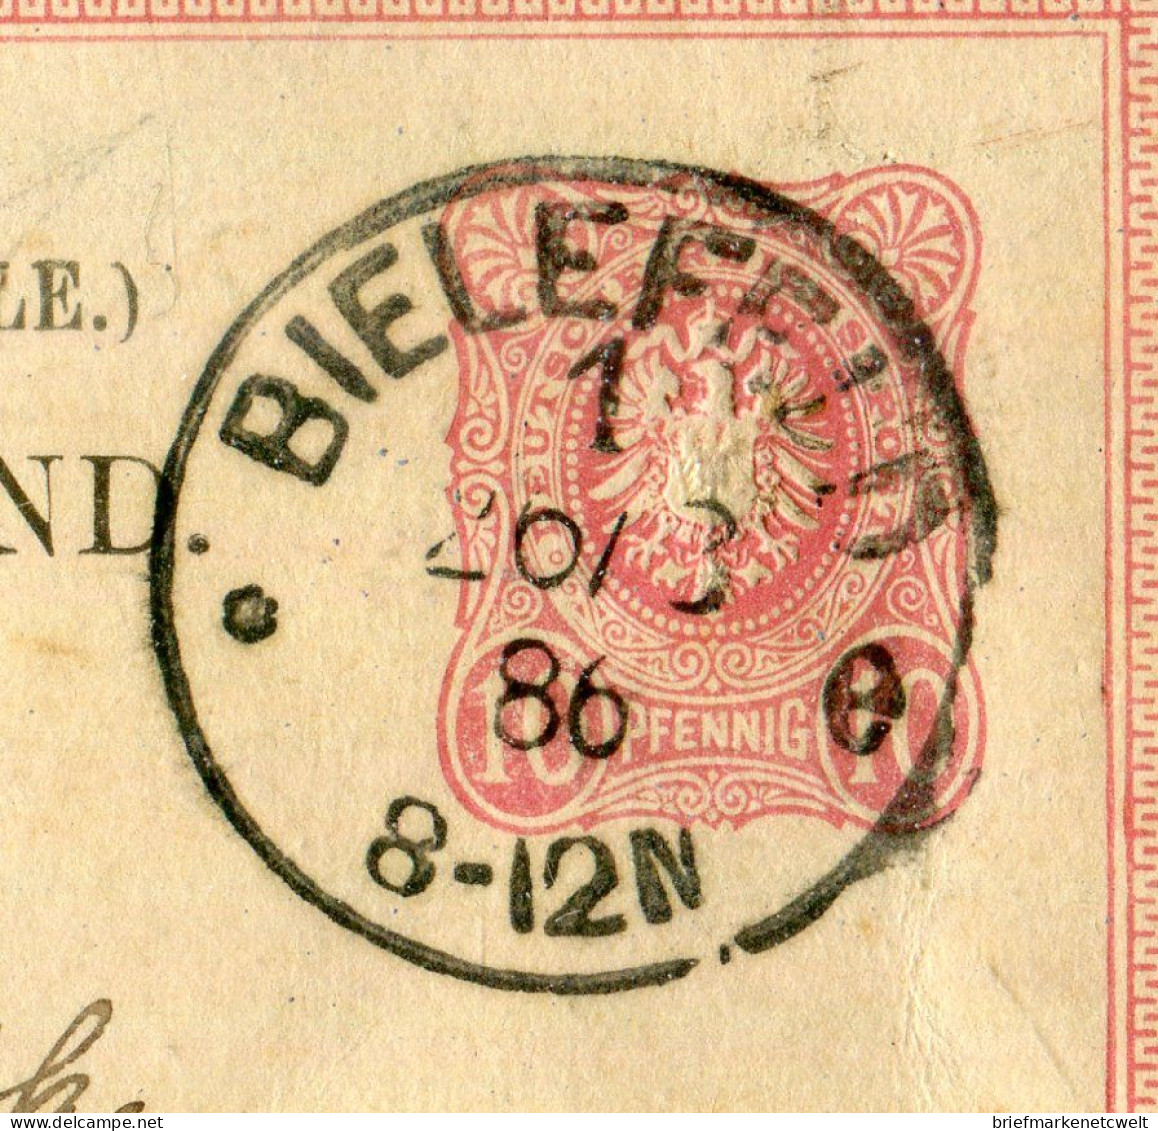 "DEUTSCHES REICH" 1886, "Klaucke"-K1 "BIELEFELD" Auf Postkarte Nach Italien (B1177) - Postcards